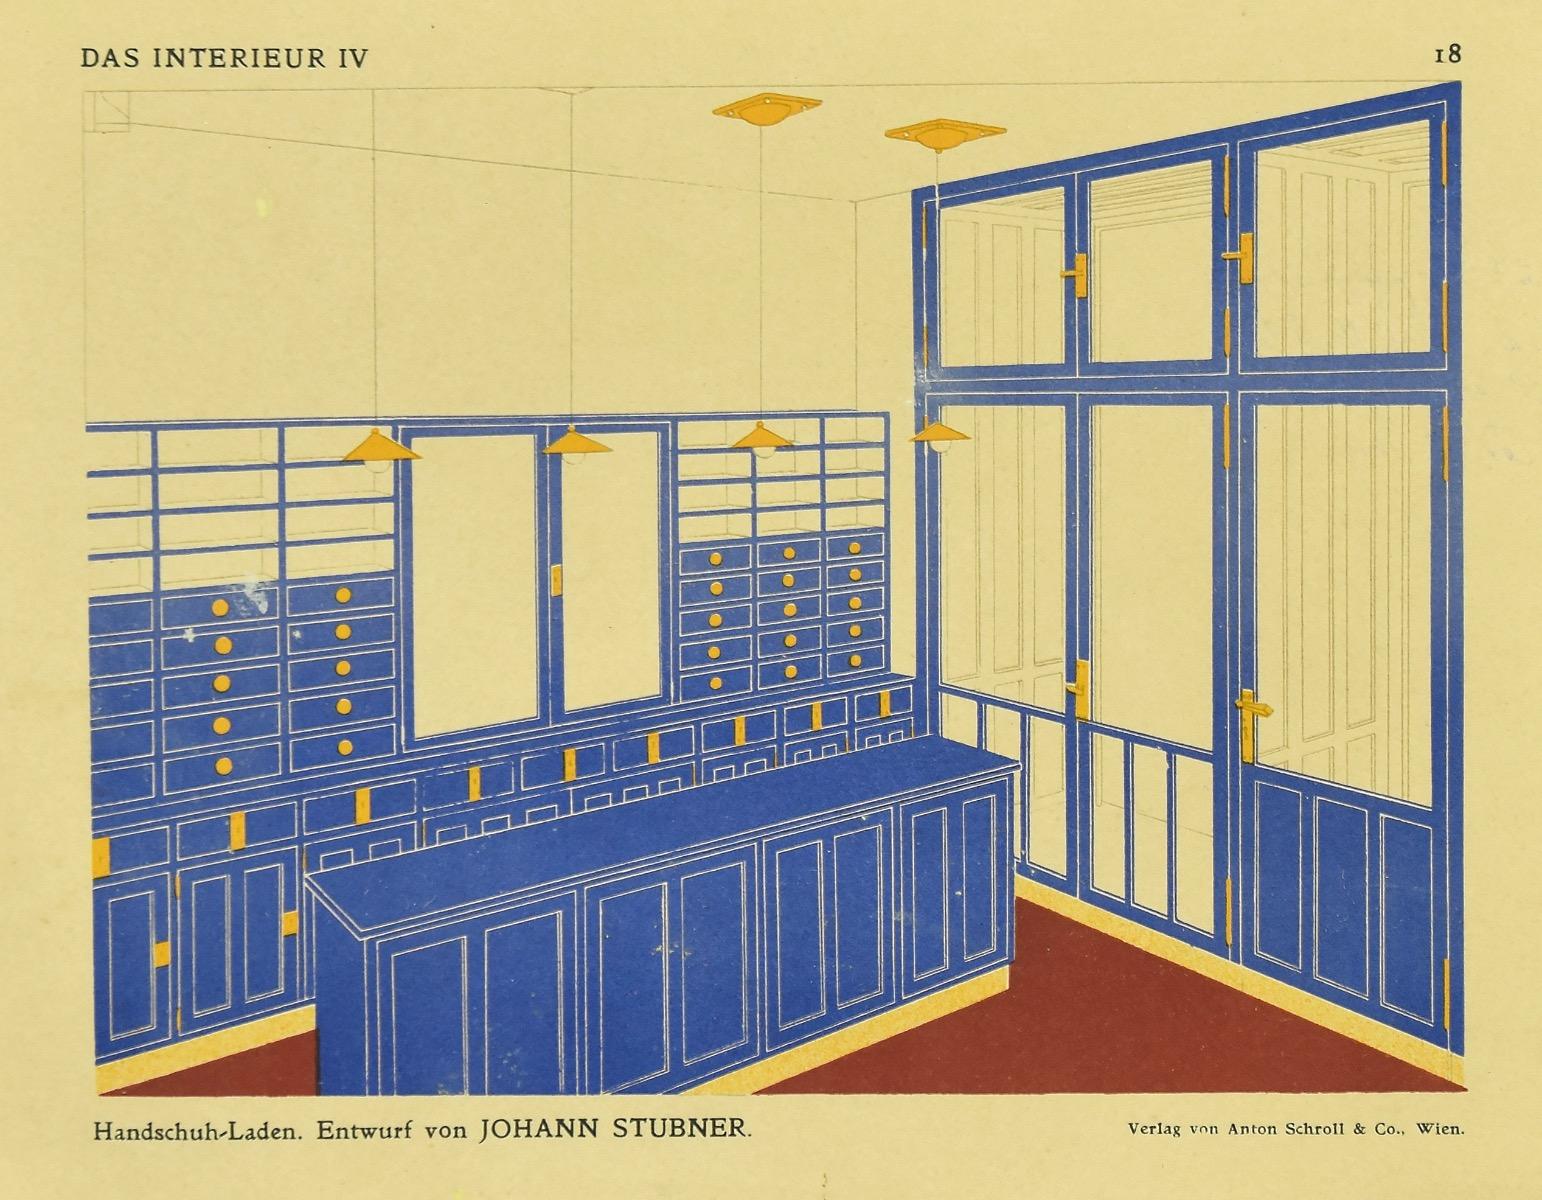 Architektonisches Design – Fotogravur nach Johann Stubner – frühes 20. Jahrhundert